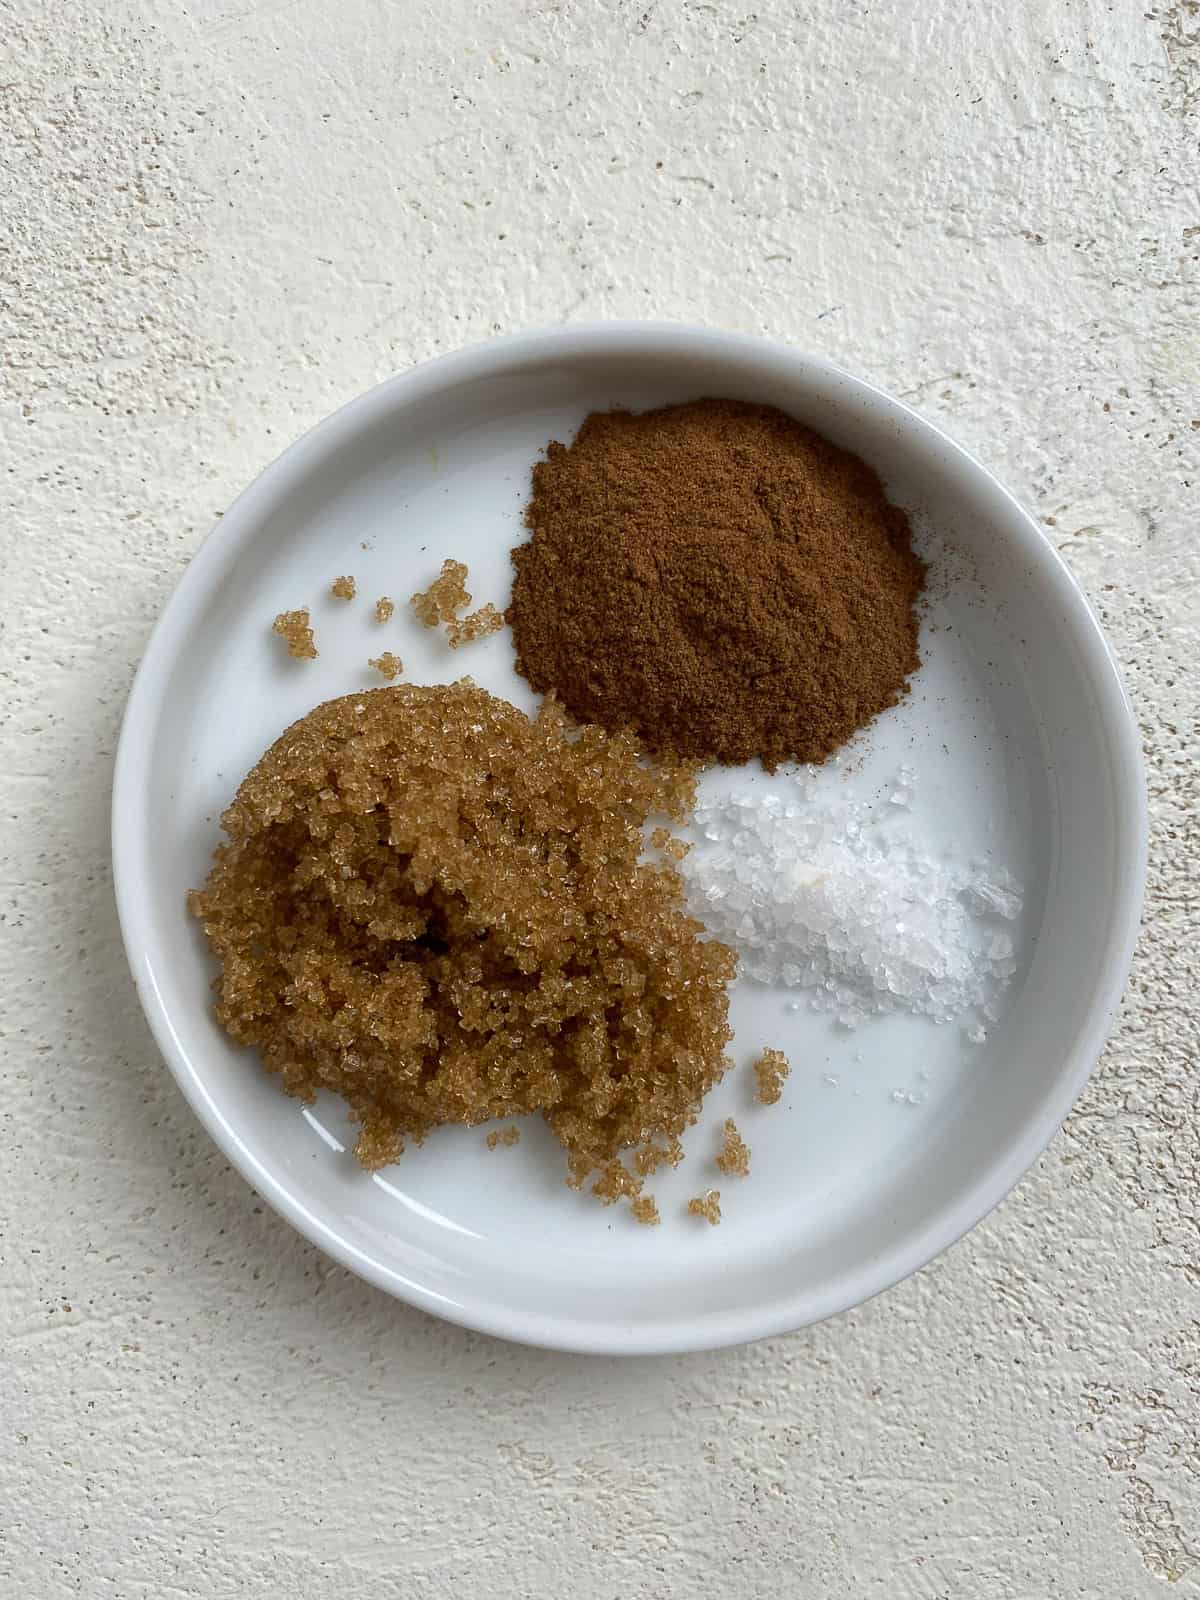 sugar, cinnamon, and salt in a white bowl